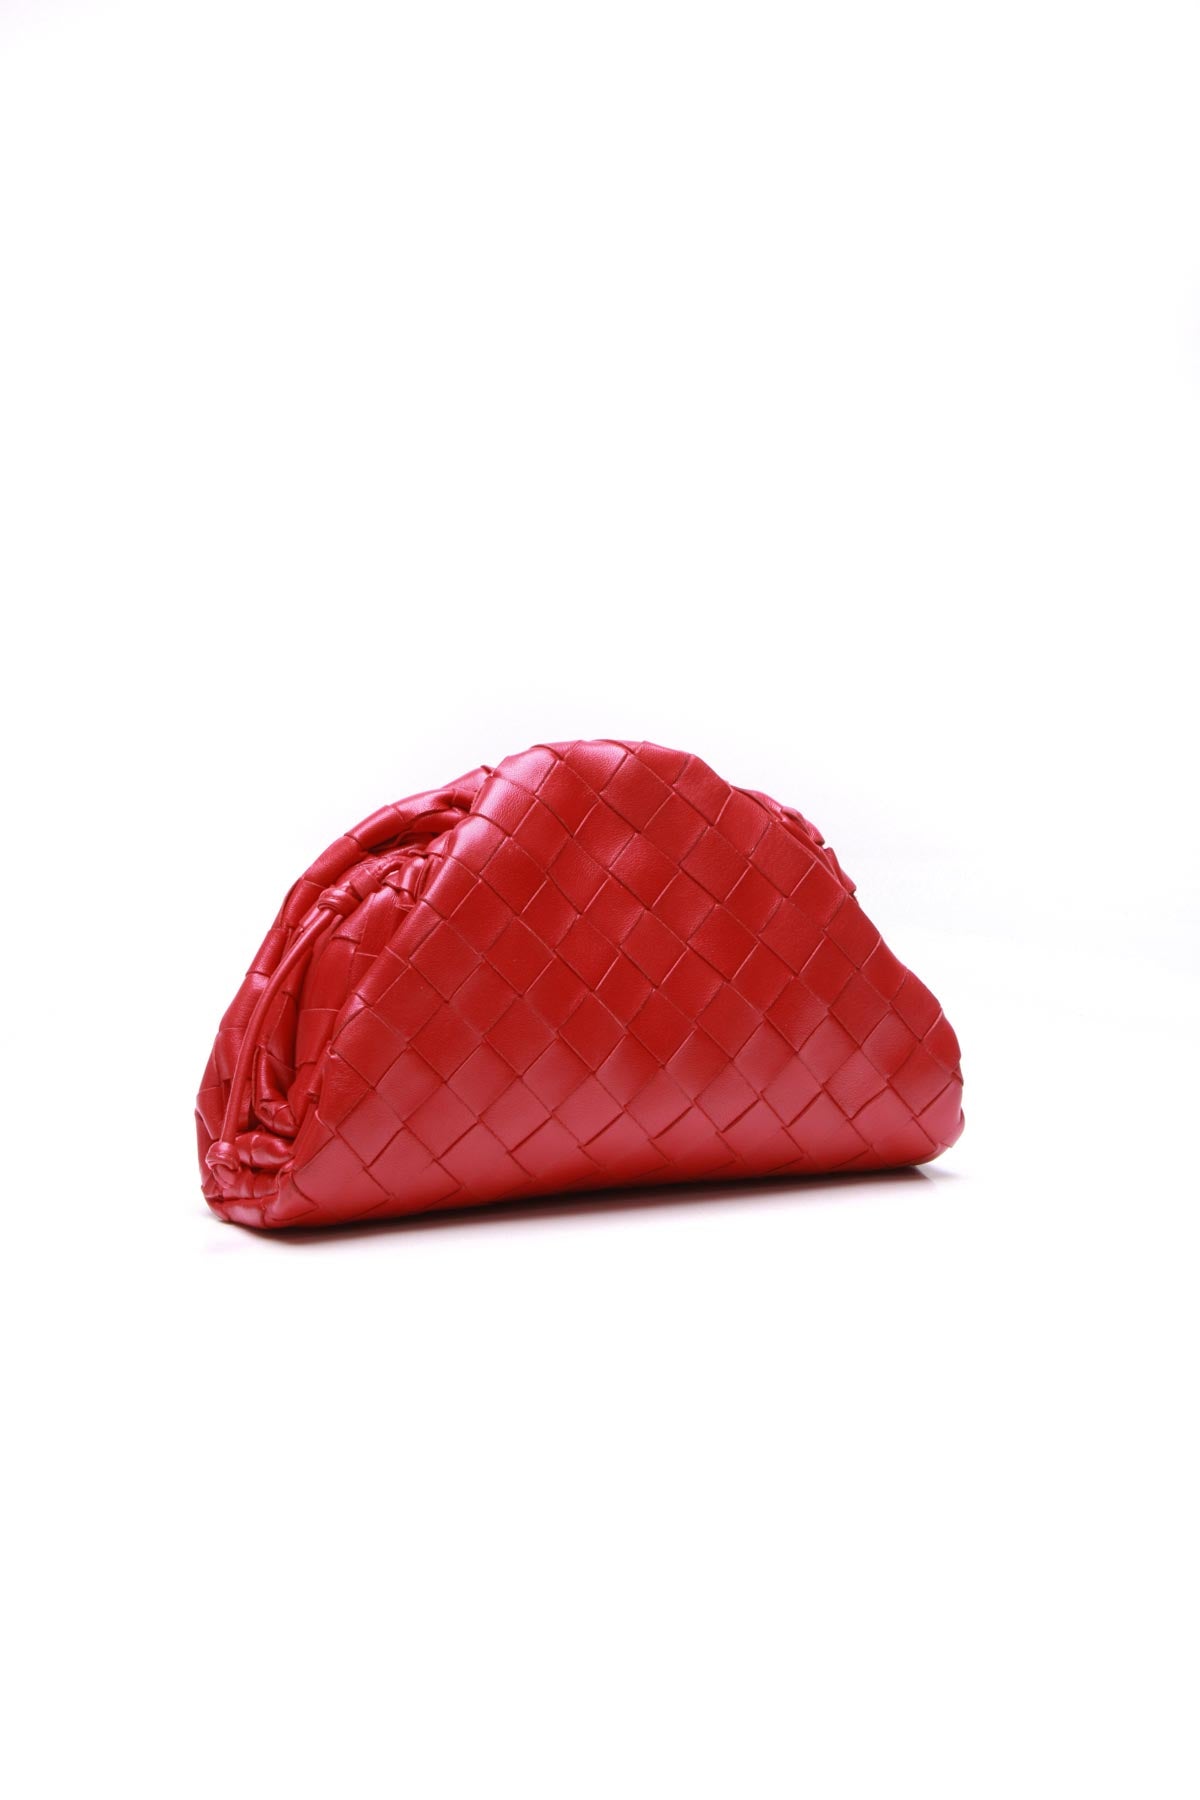 Bottega Veneta Red Leather Mini Pouch Bag Bottega Veneta